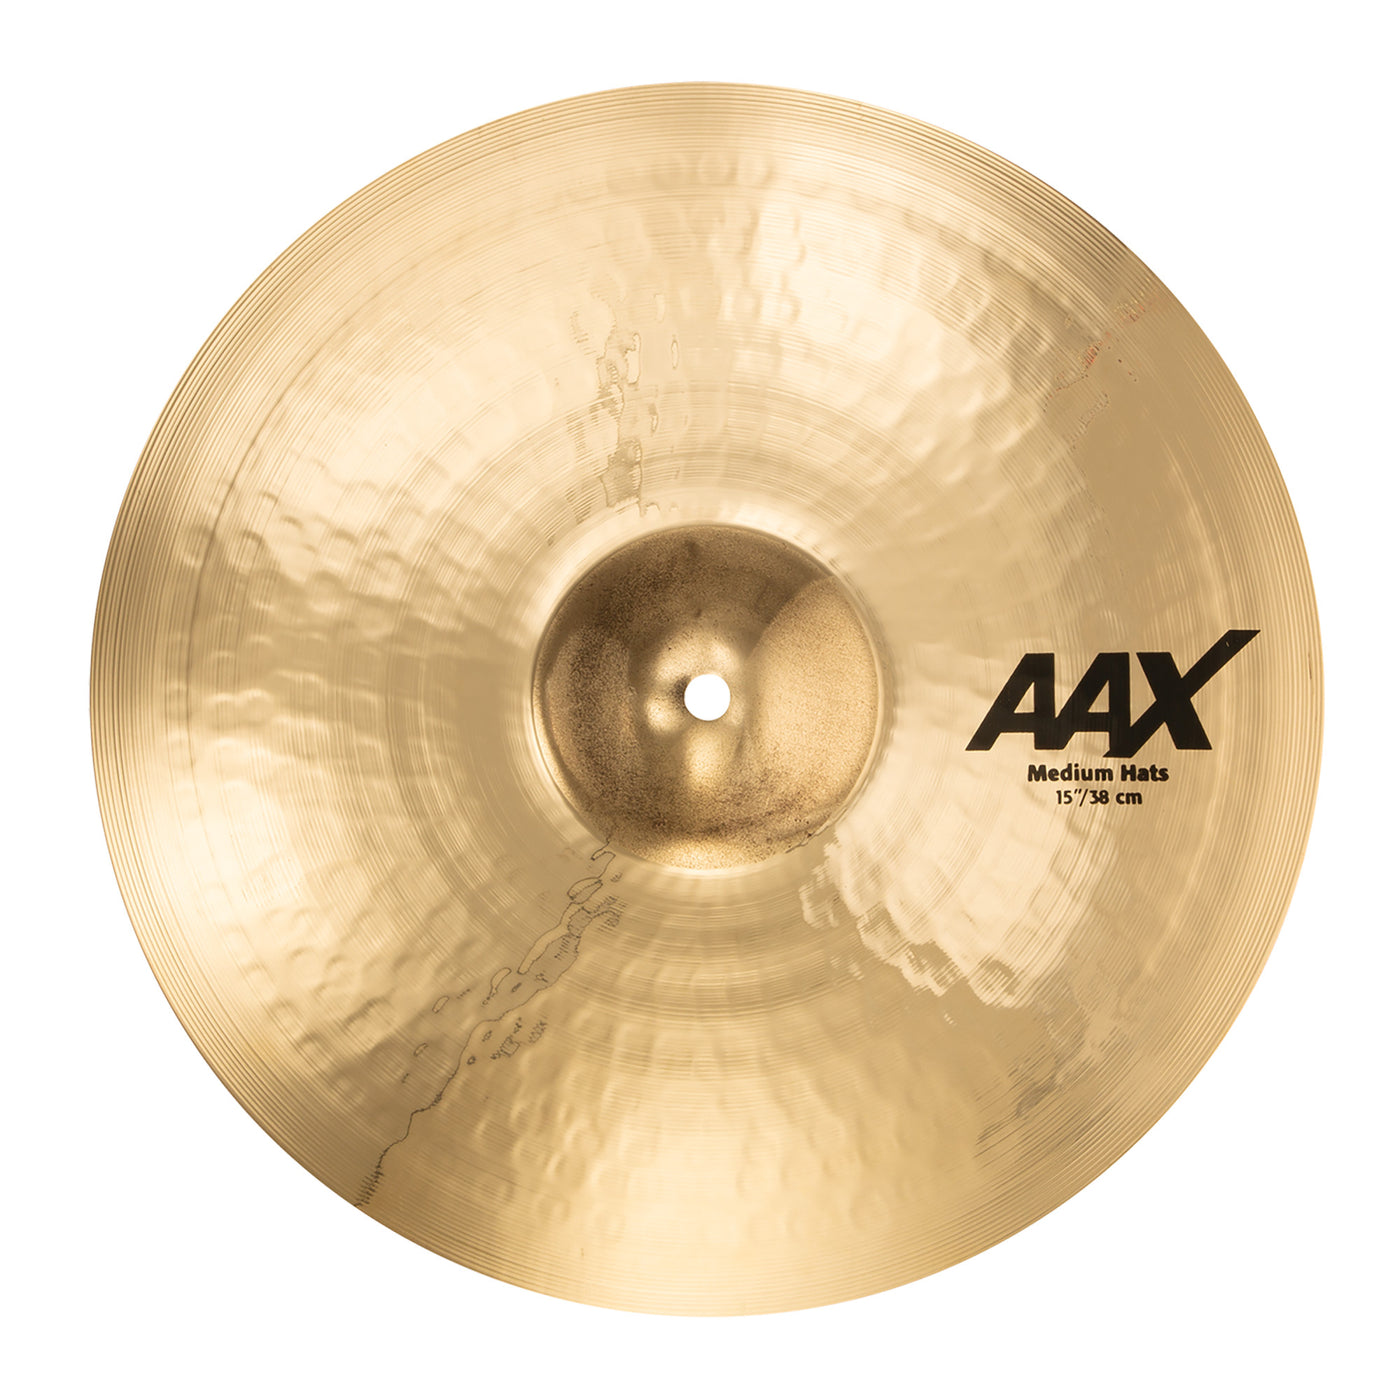 Sabian 15" AAX Medium Hi-Hat Cymbals - Brilliant Finish